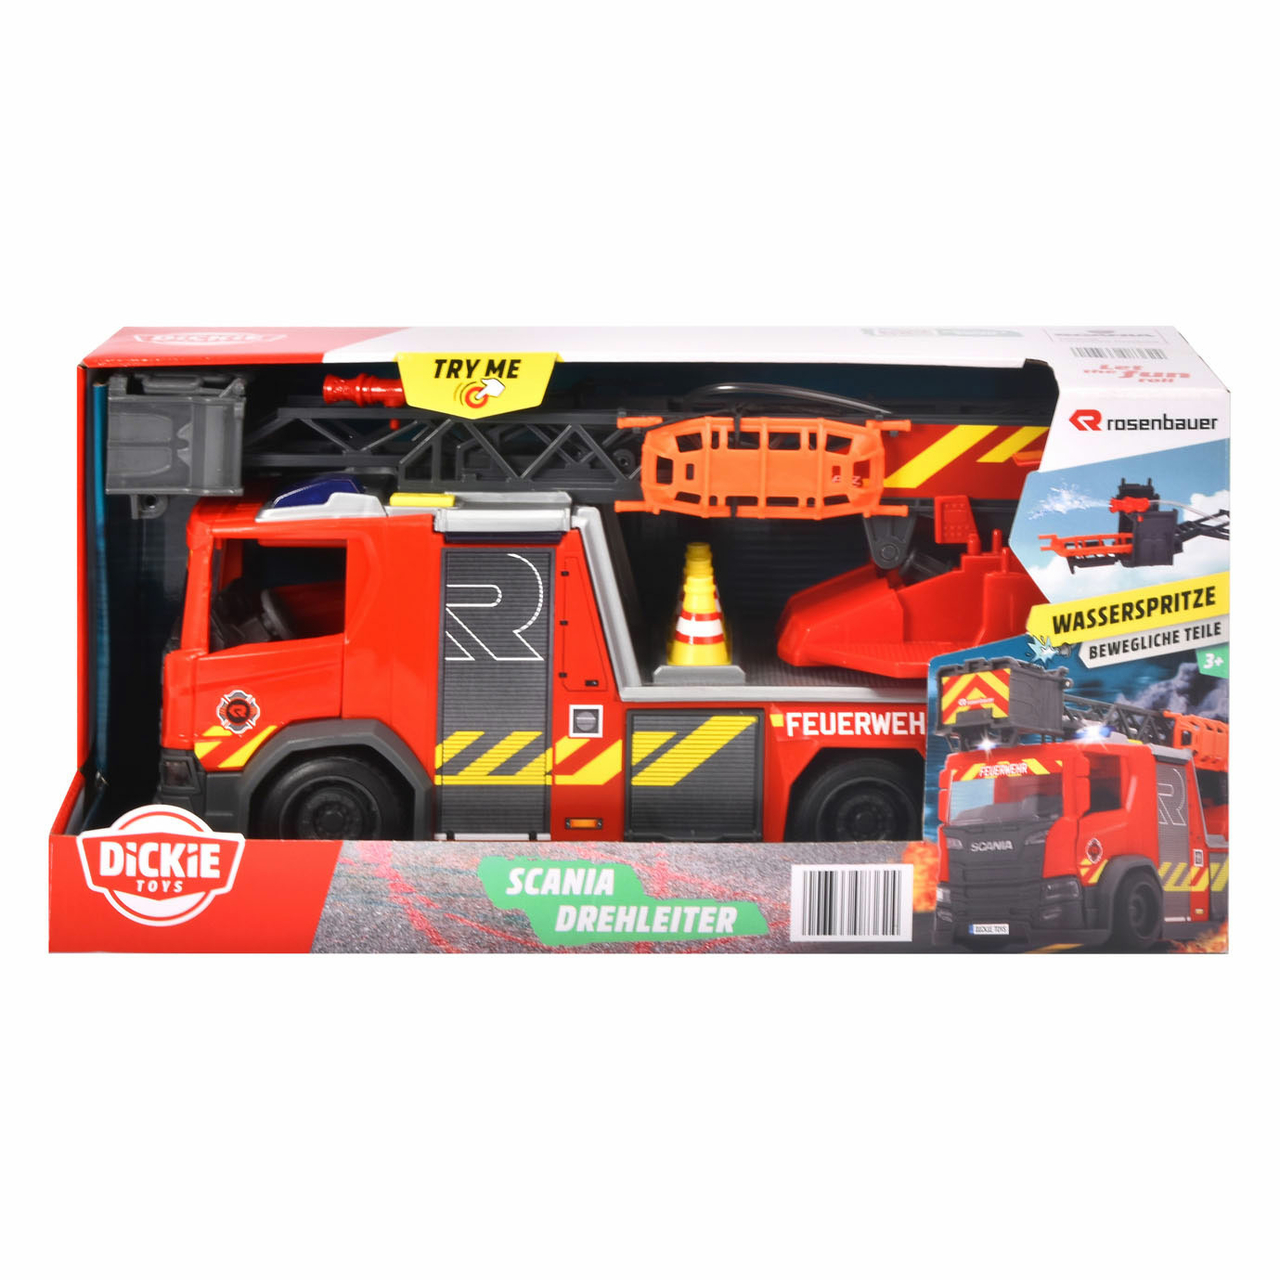 ventilatie strand vermogen Dickie Brandweerwagen met Waterspuit - Het Speelgoedpaleis